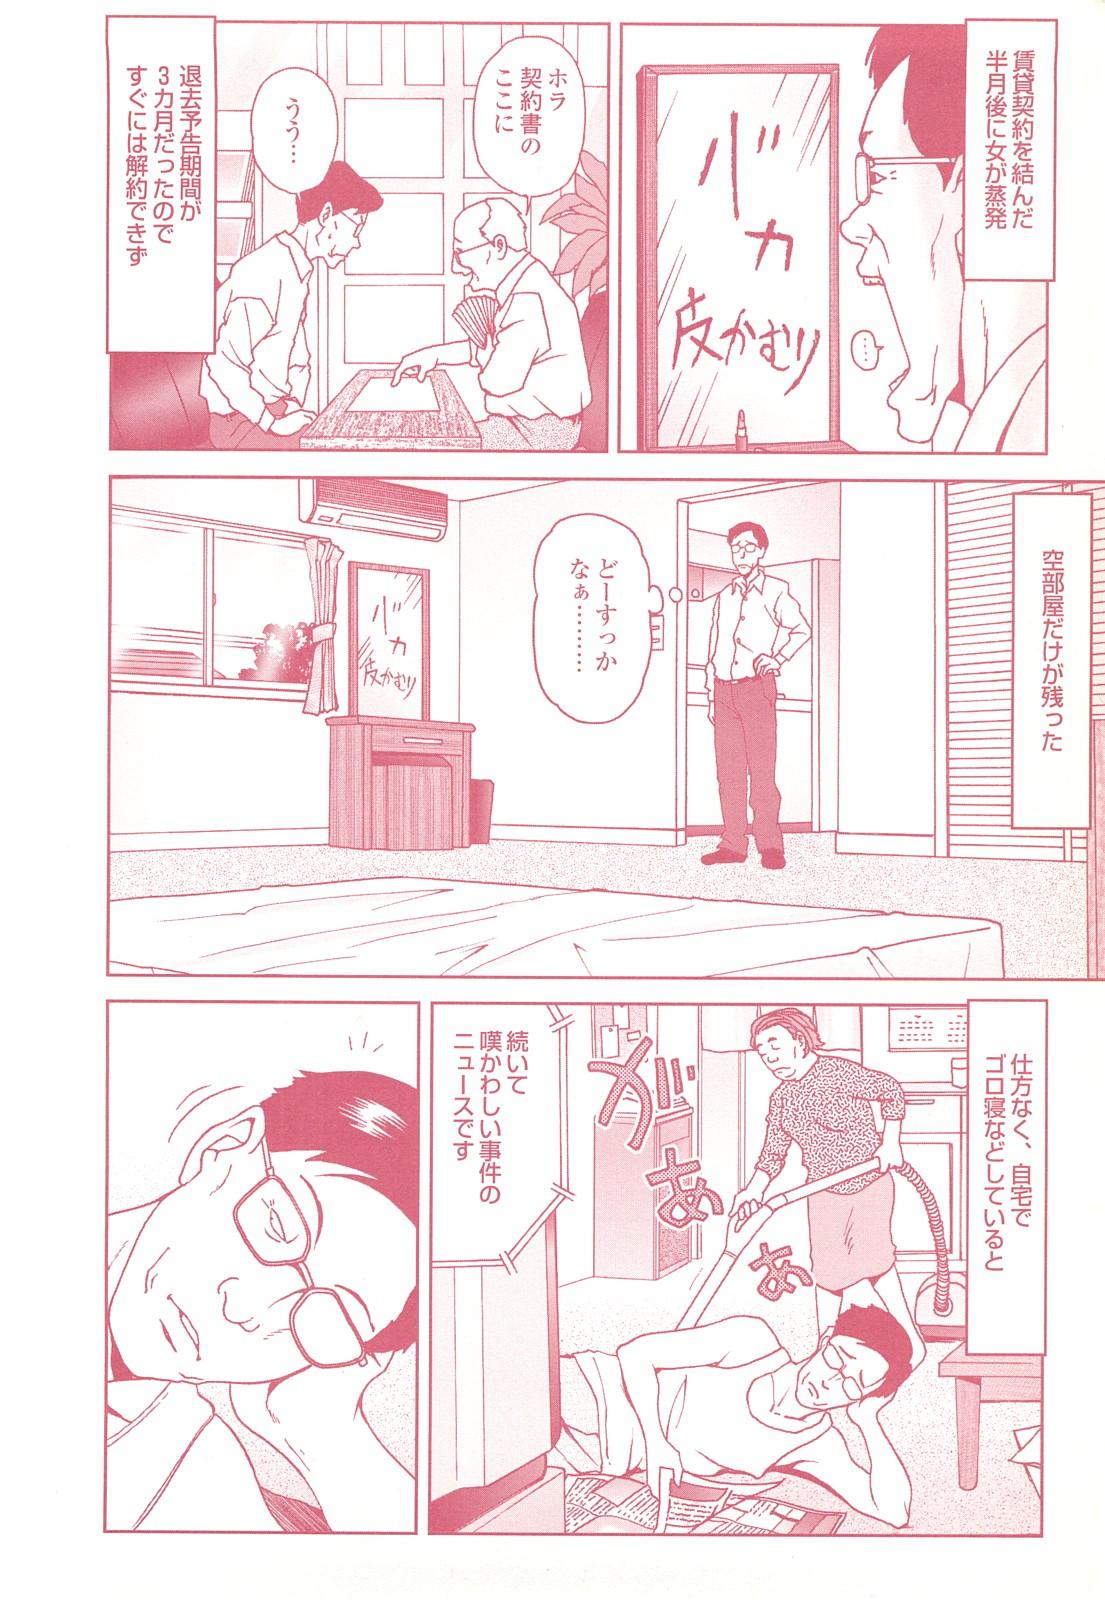 コミック裏モノJAPAN Vol.18 今井のりたつスペシャル号 93